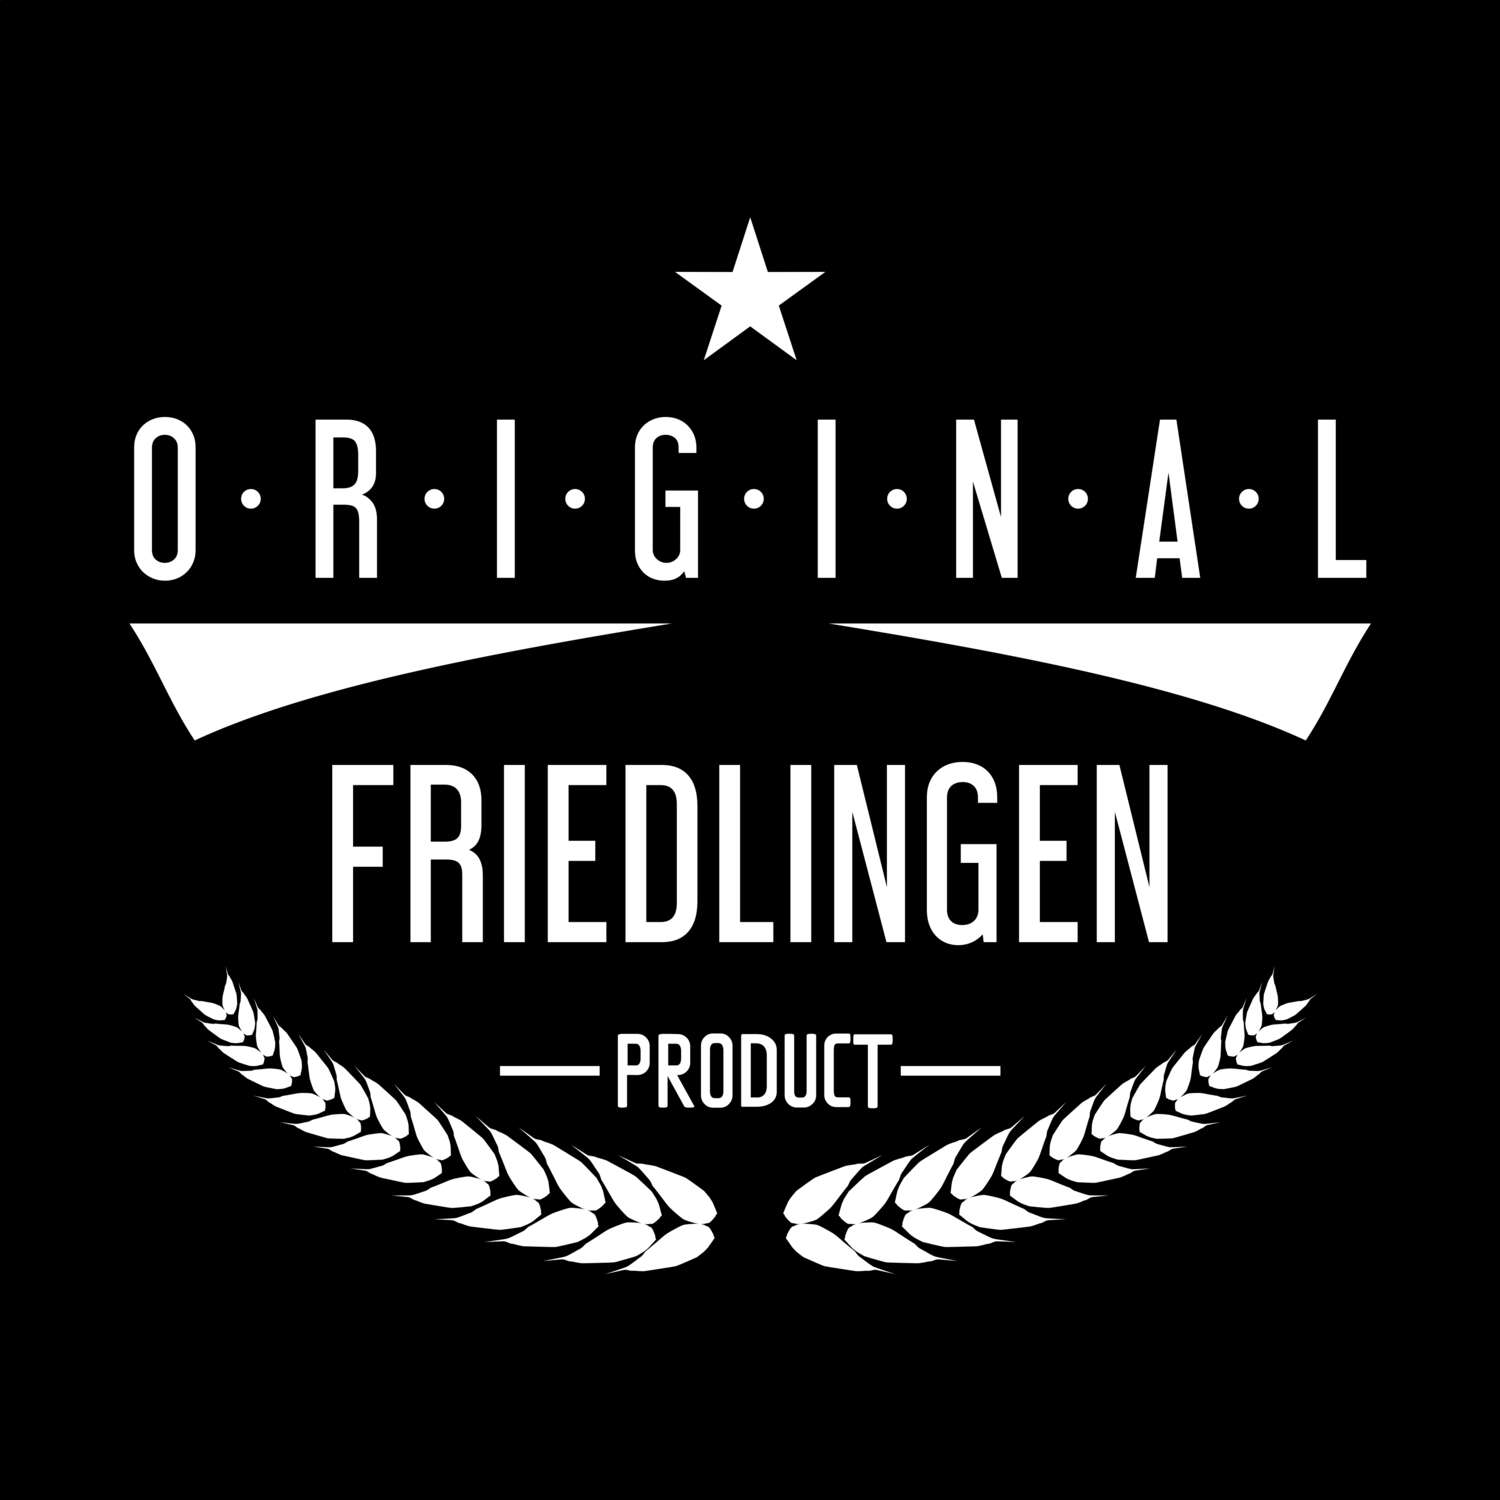 Friedlingen T-Shirt »Original Product«